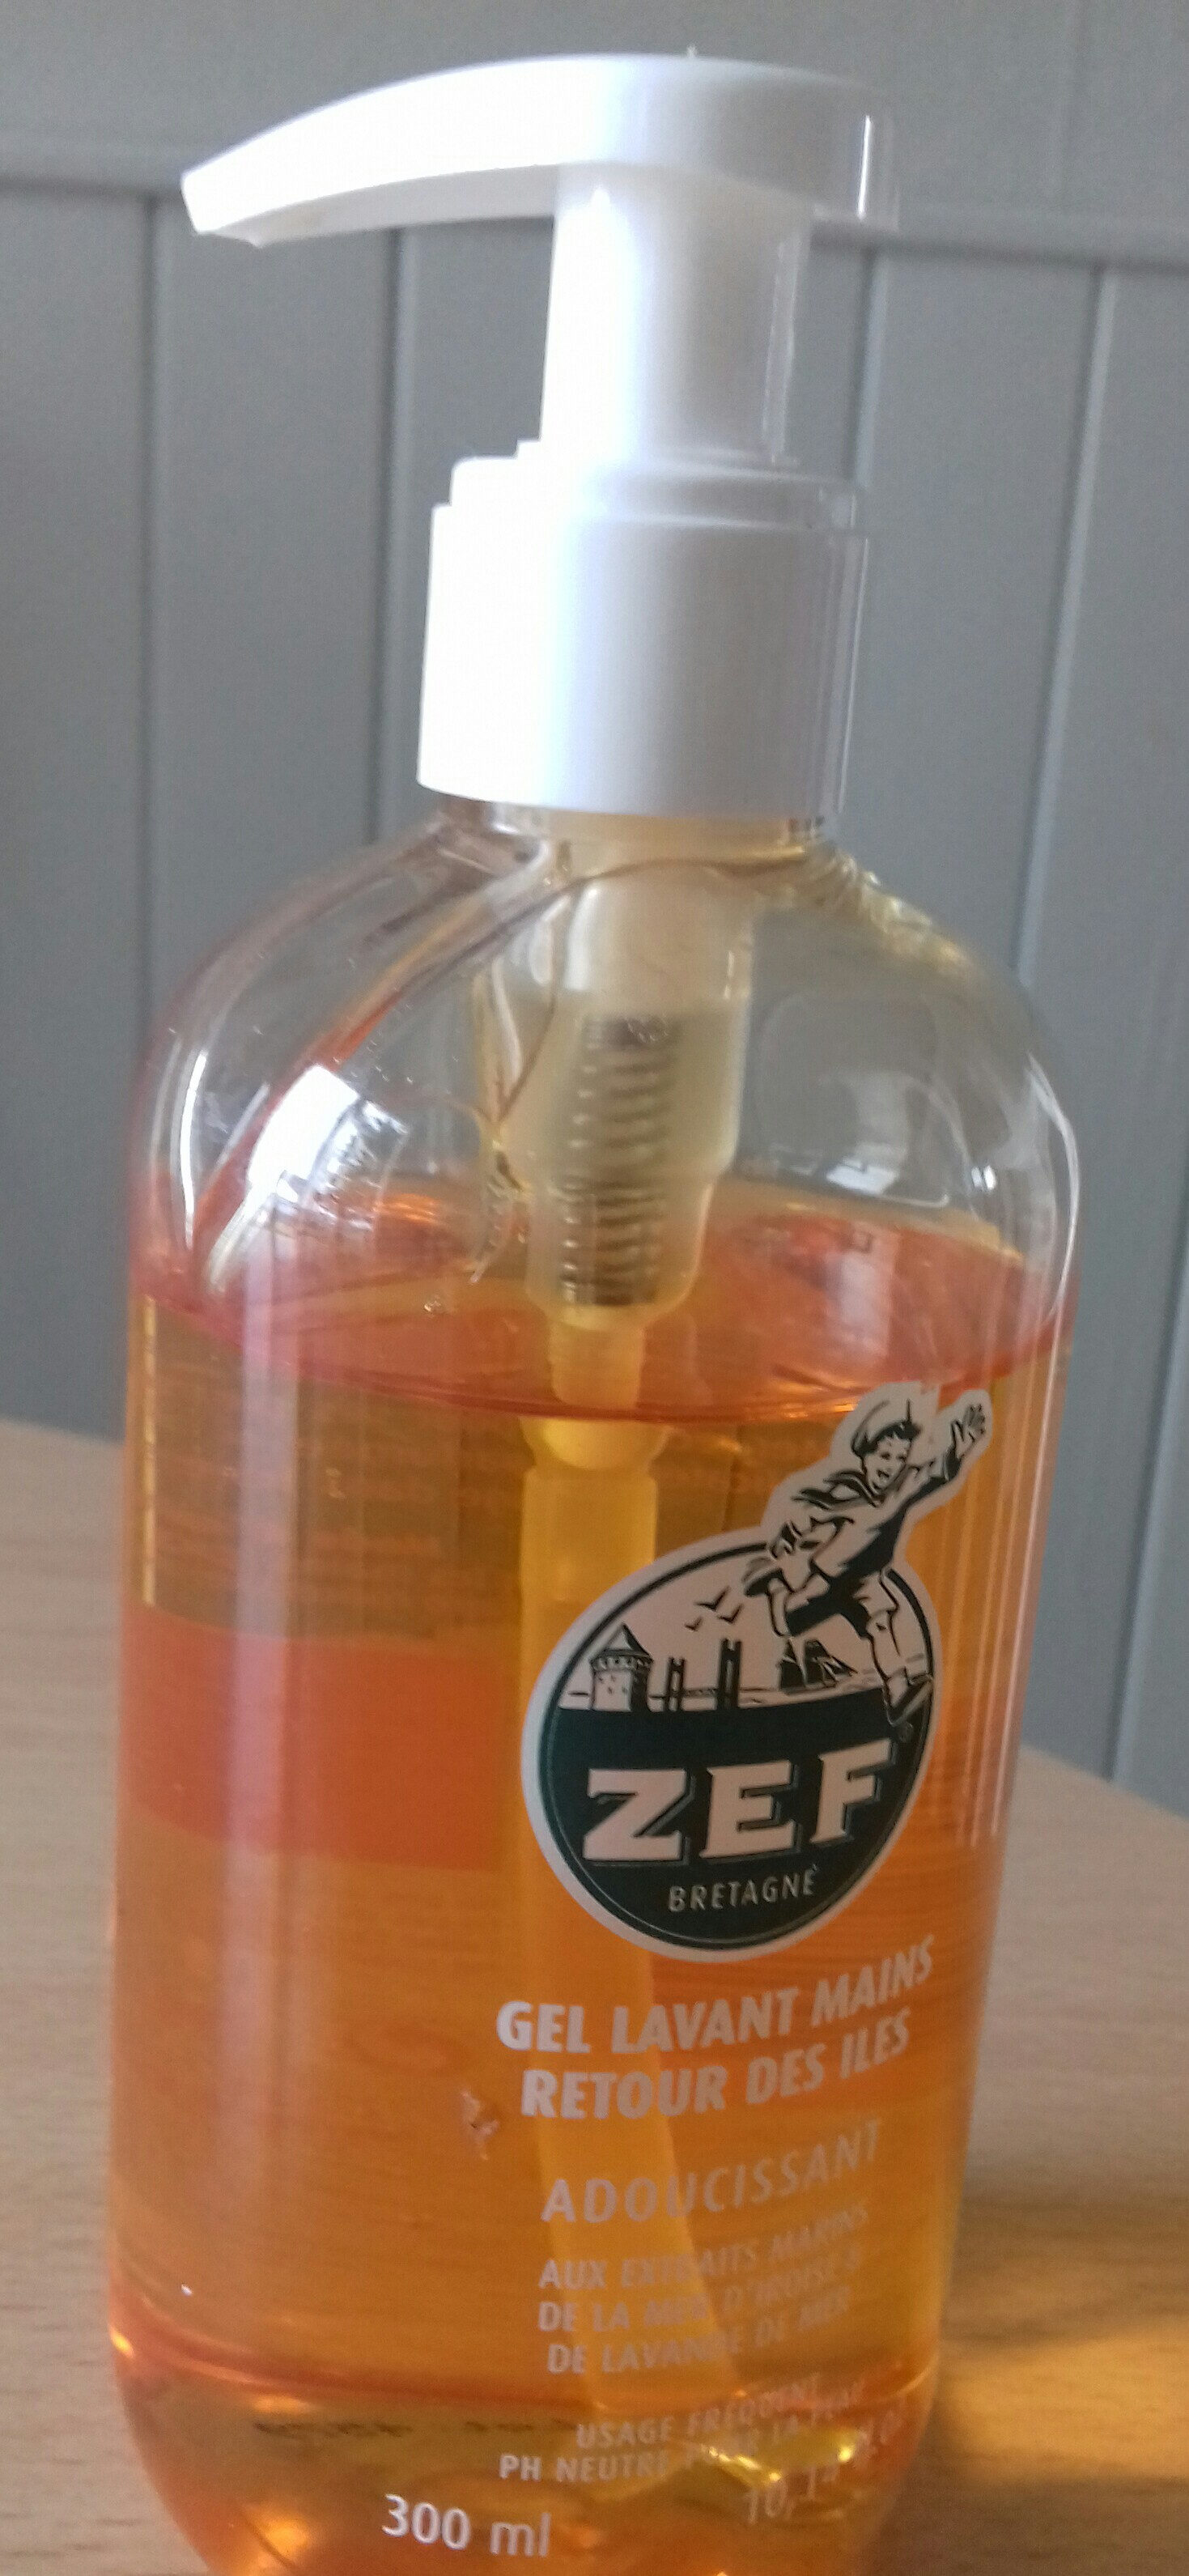 Gel lavant mains ZEF - Product - fr